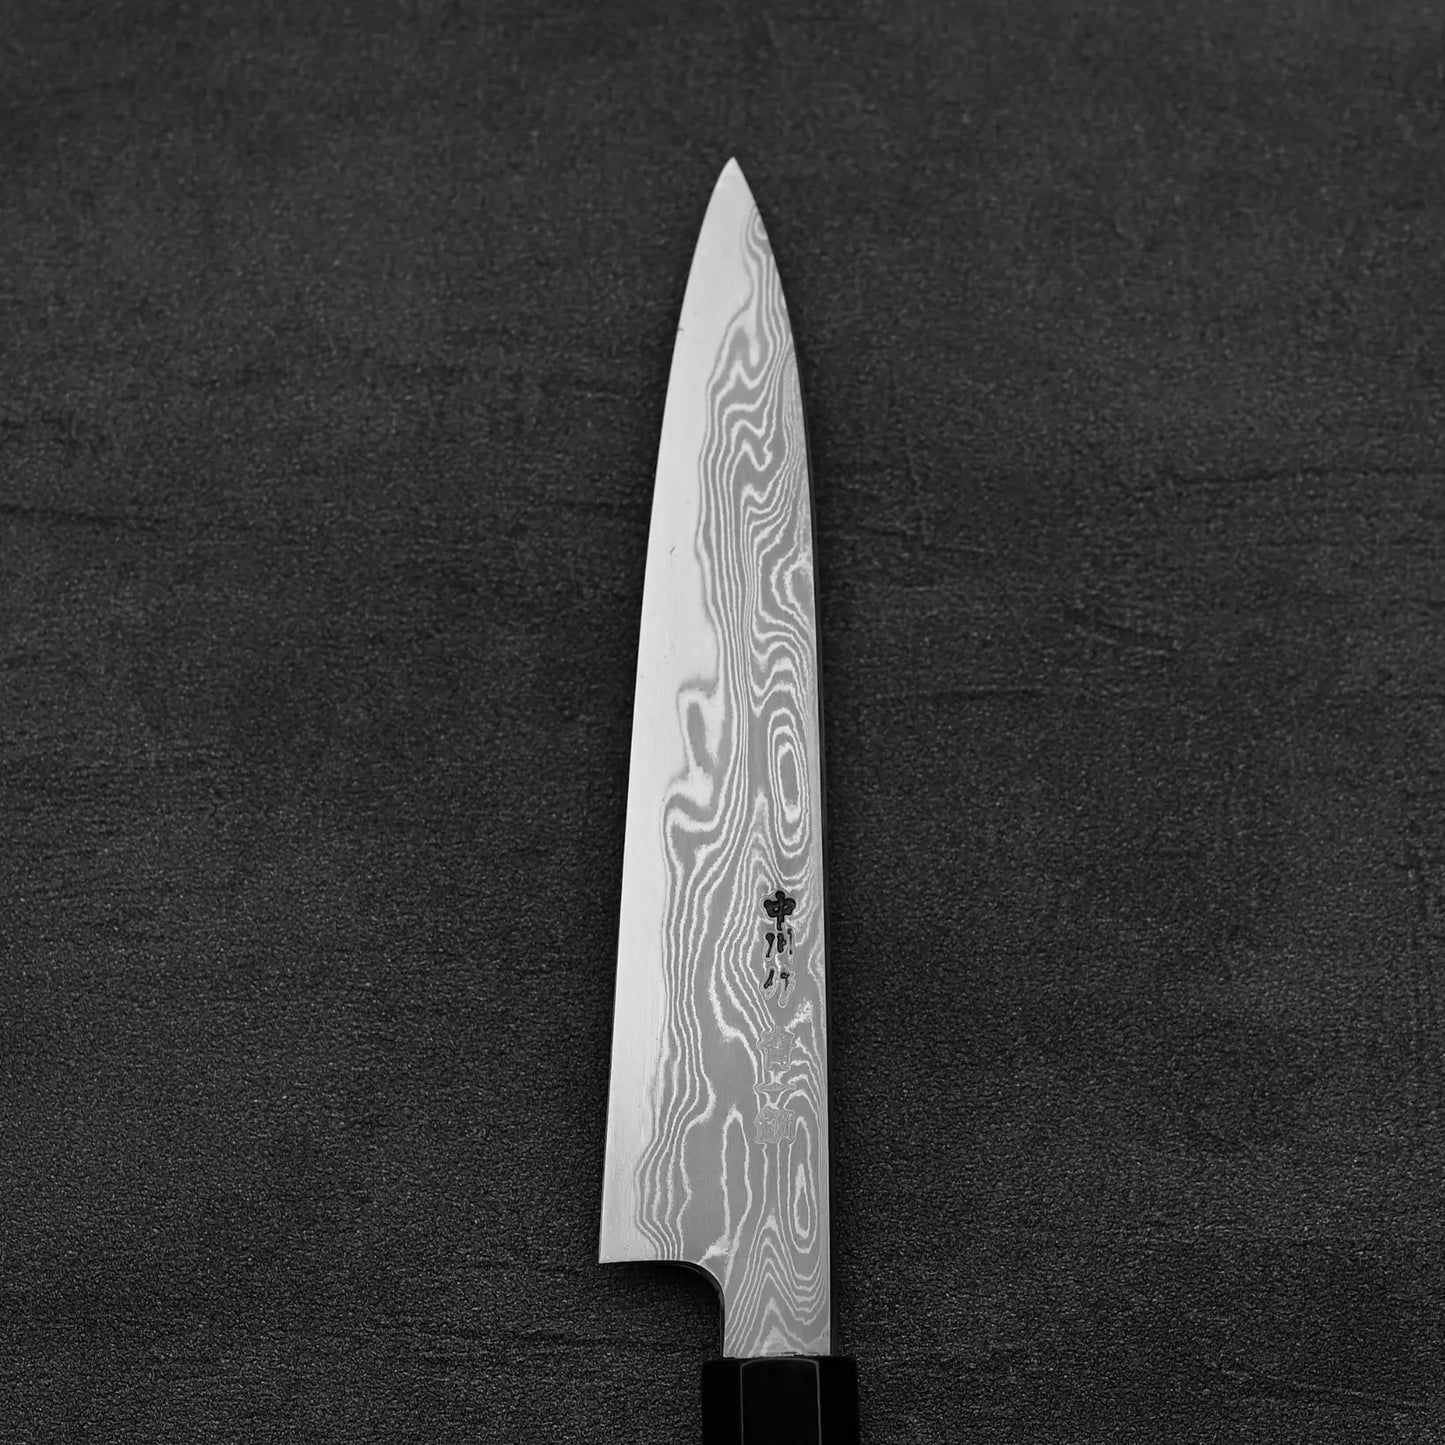 Nakagawa damascus aogami#1 petty knife 150mm